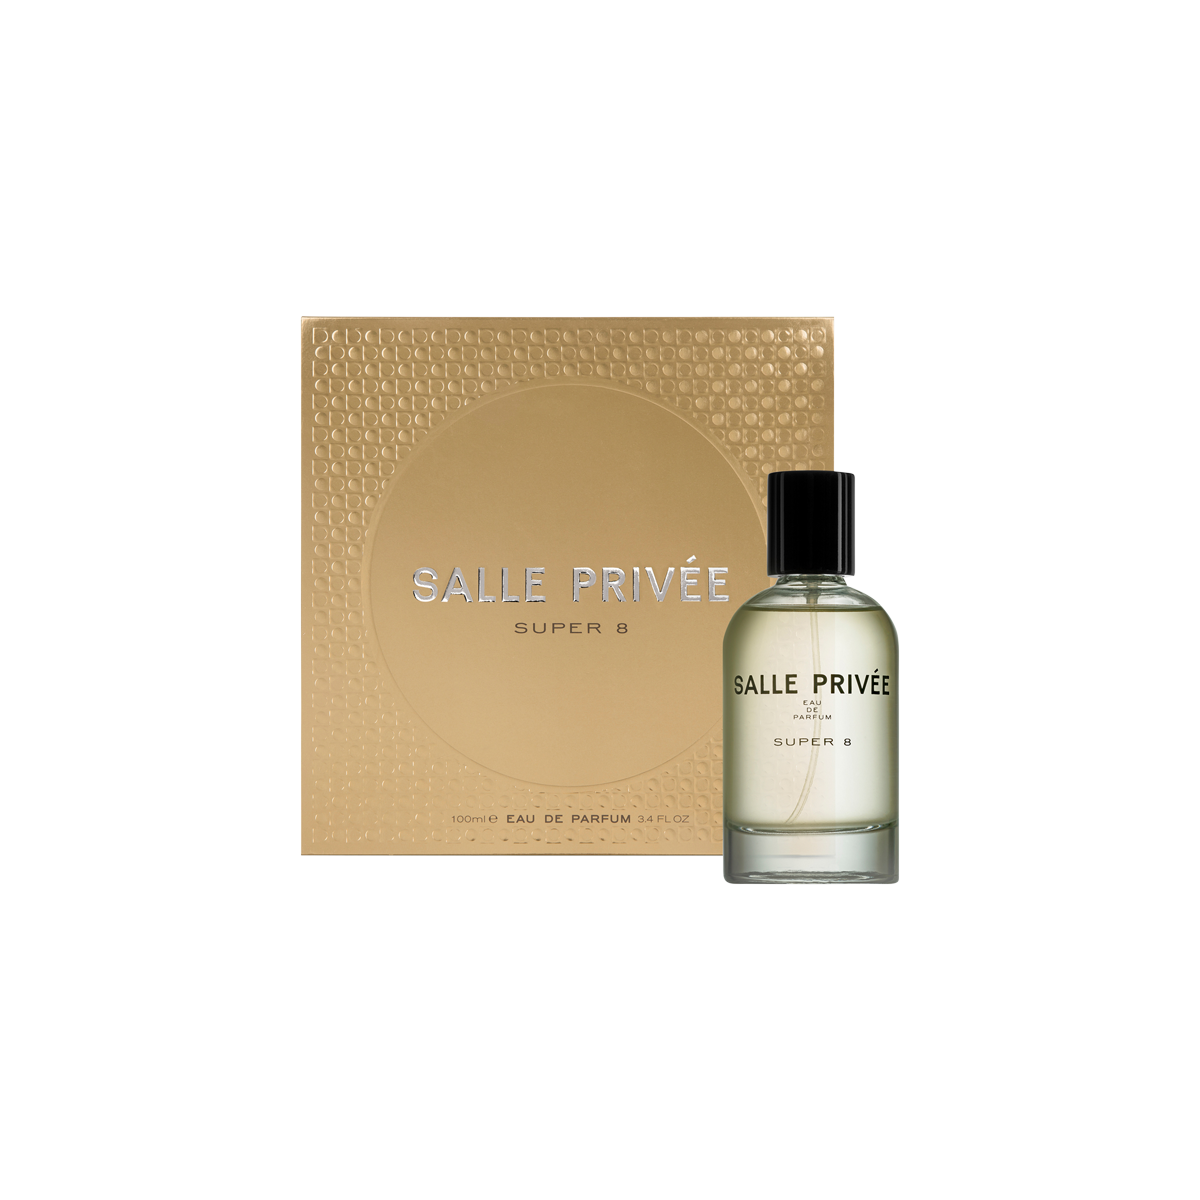 SALLE PRIVEE - Super 8 Eau de Parfum